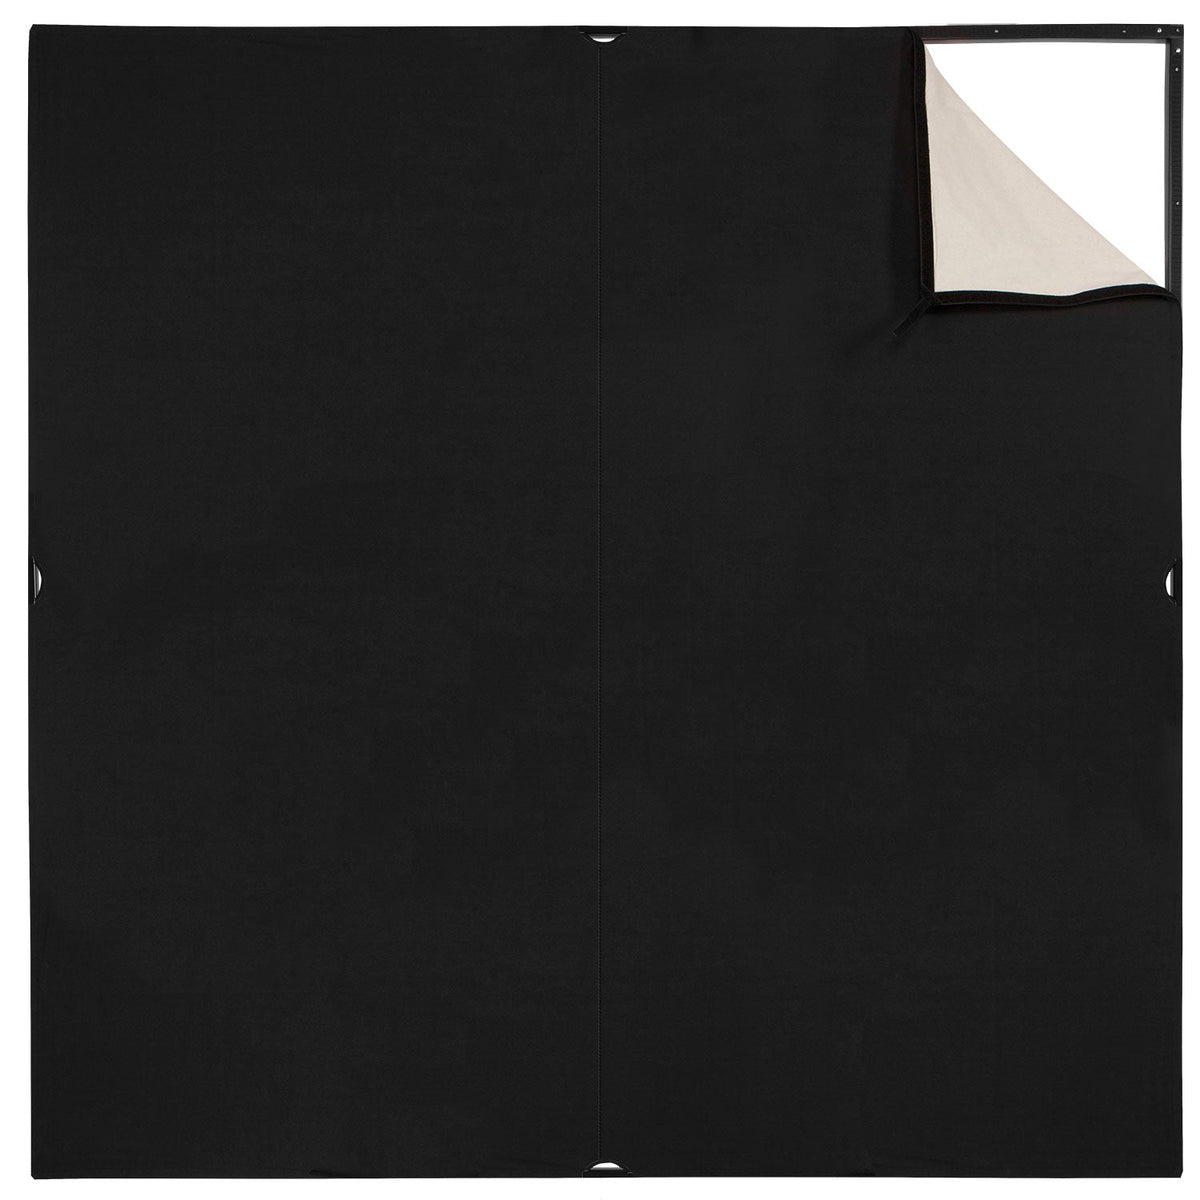 Scrim Jim Cine Unbleached Muslin/Black Fabric (6' x 6')